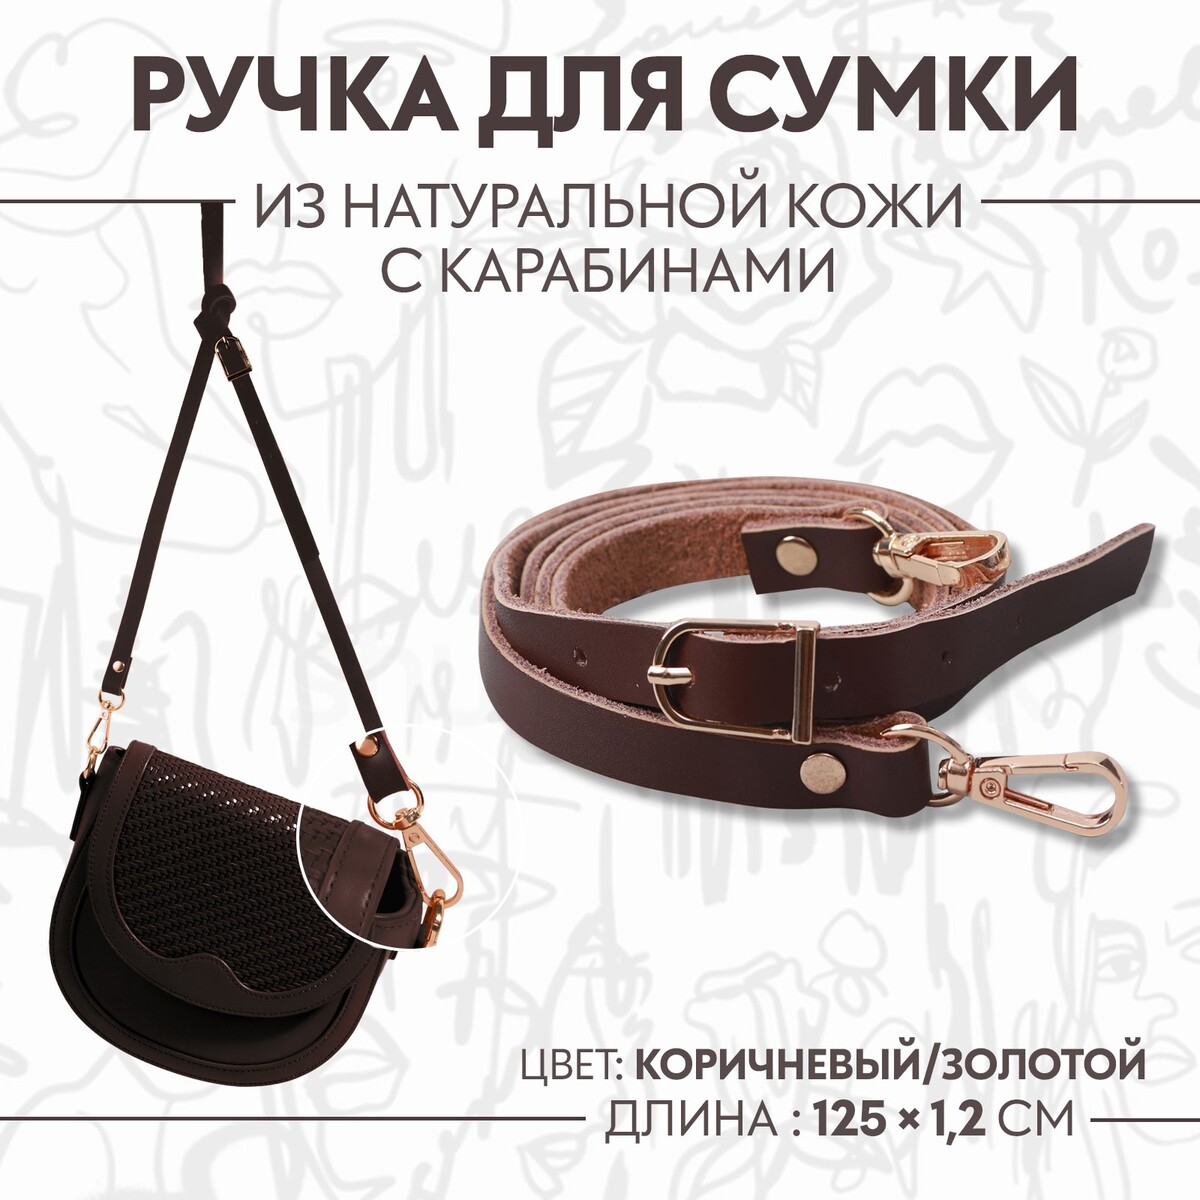 Ручка для сумки из натуральной кожи, с карабинами, 125 × 1,2 см, цвет коричневый